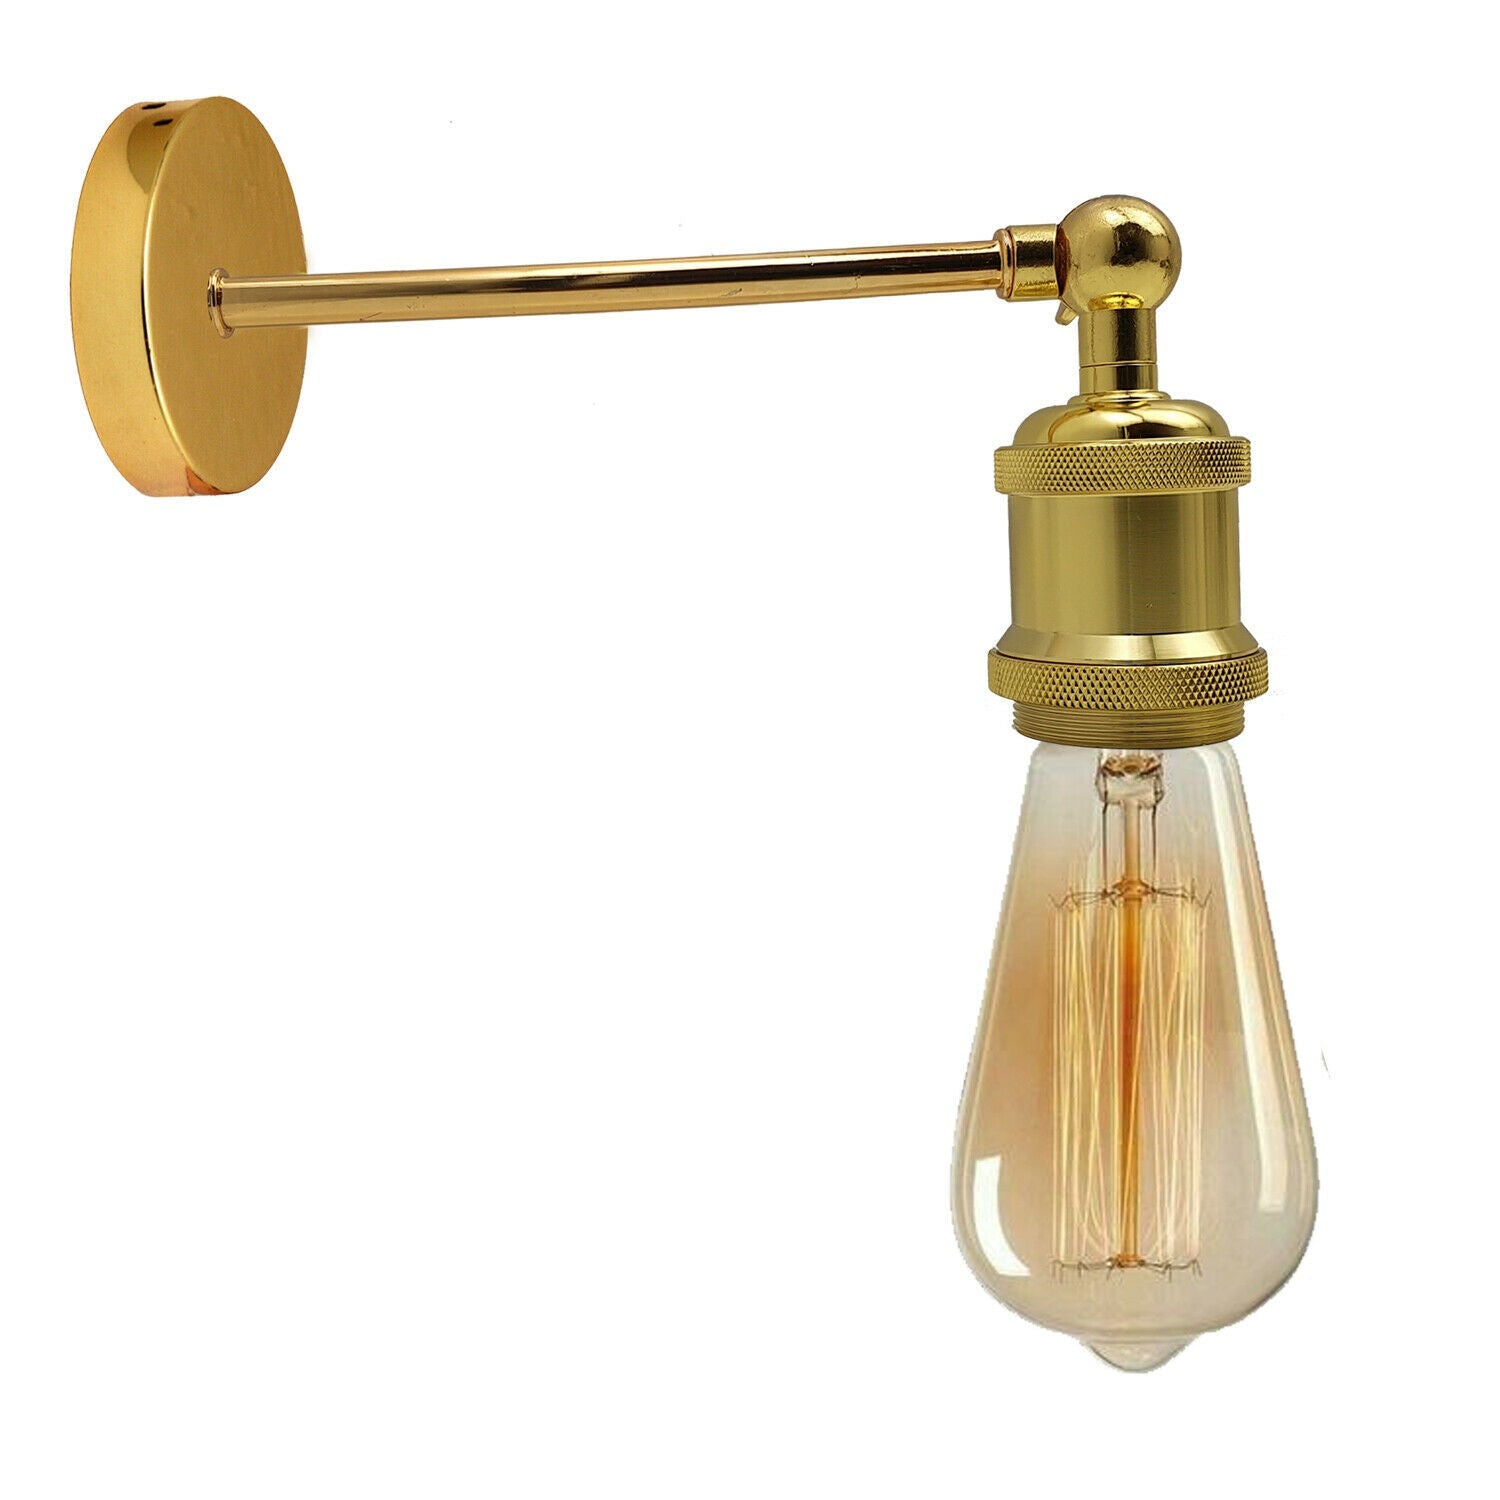 Se Industriel fransk guld Retro justerbare væglamper Vintage Style Sconce Lamp Fitting Kit hos Lammeuld.dk